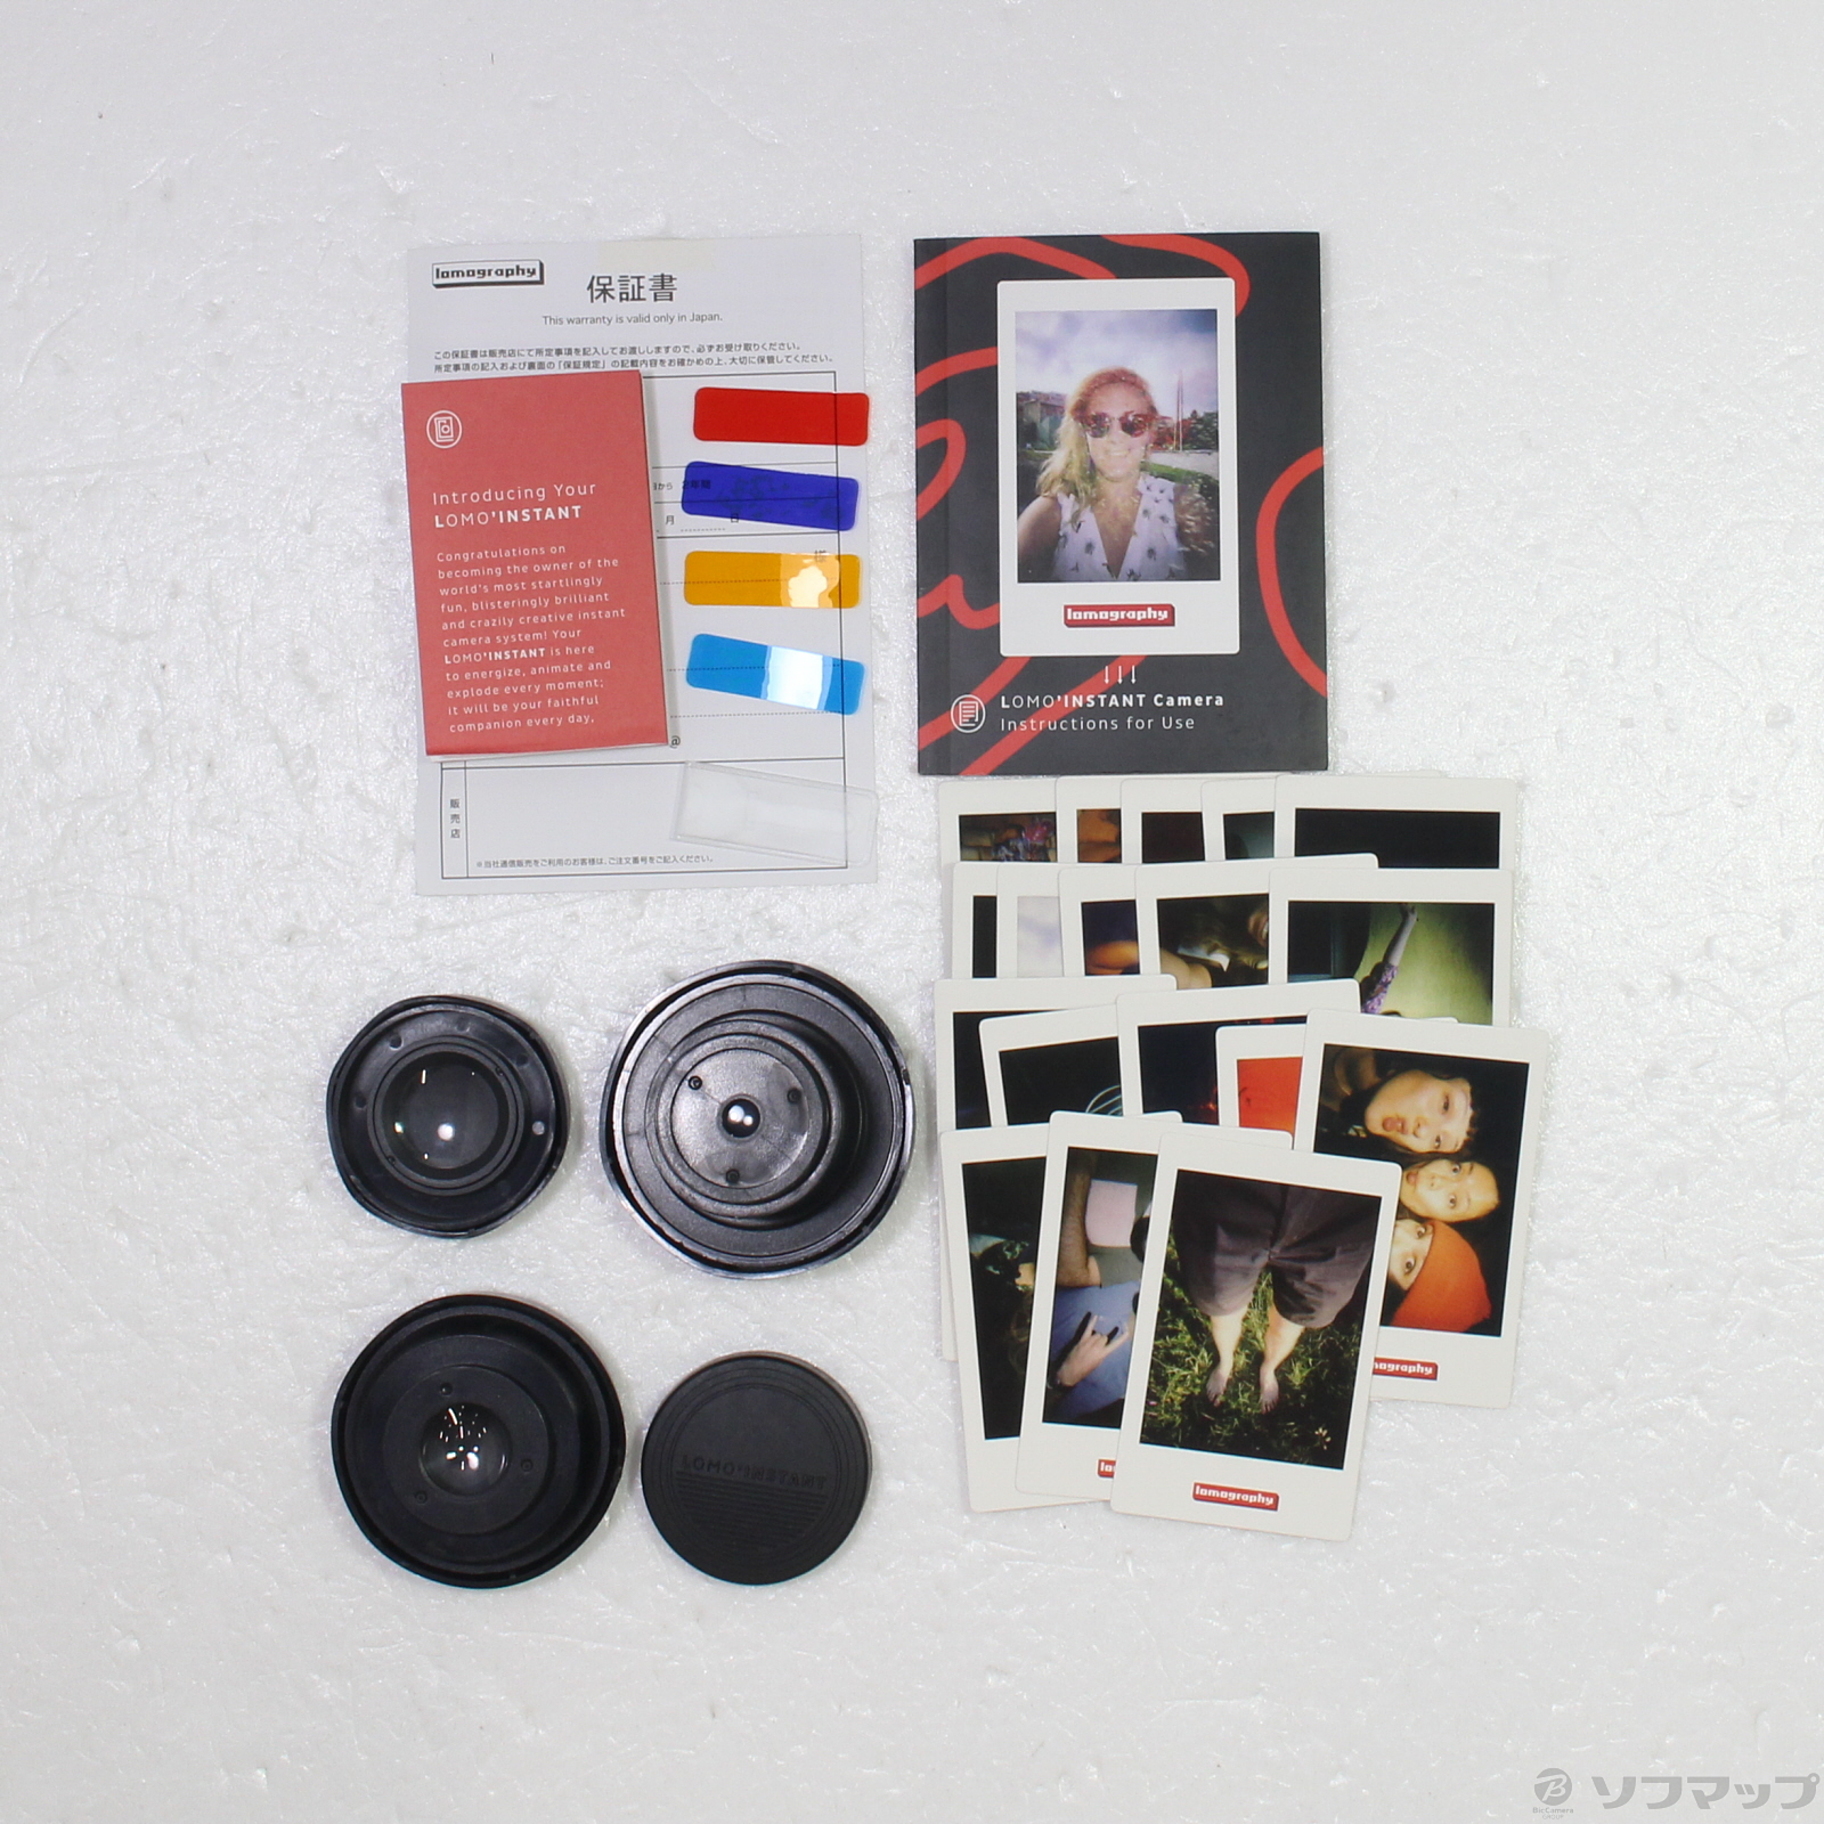 〔展示品〕 Lomo Instant Sanremo & Lens kit li800lux